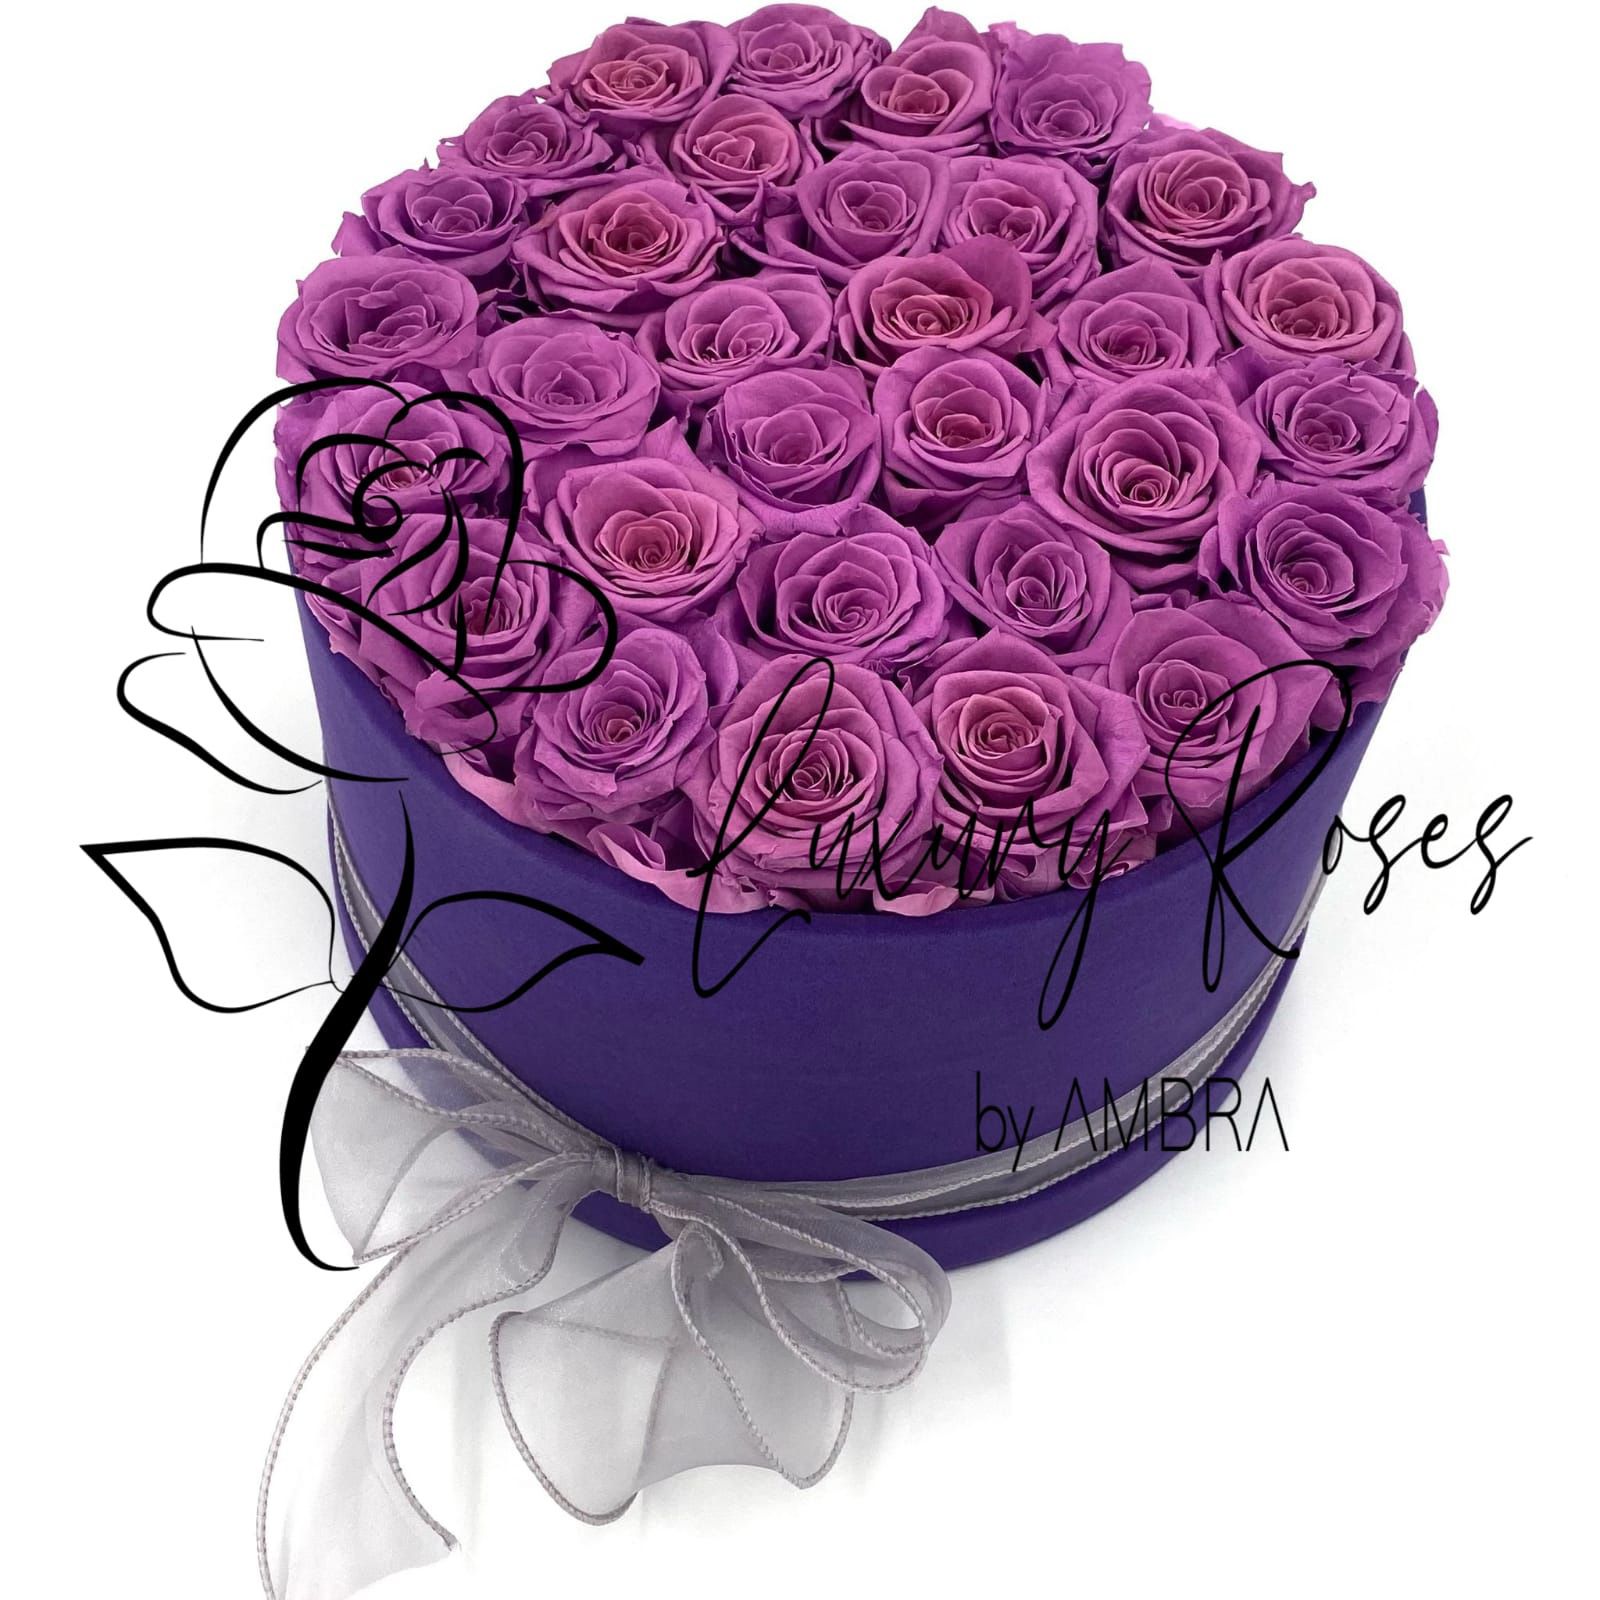 Eternal velvet box roses real preserved roses purple flowers immortal roses anniversary birthday immortal lasting Velvet Box Present